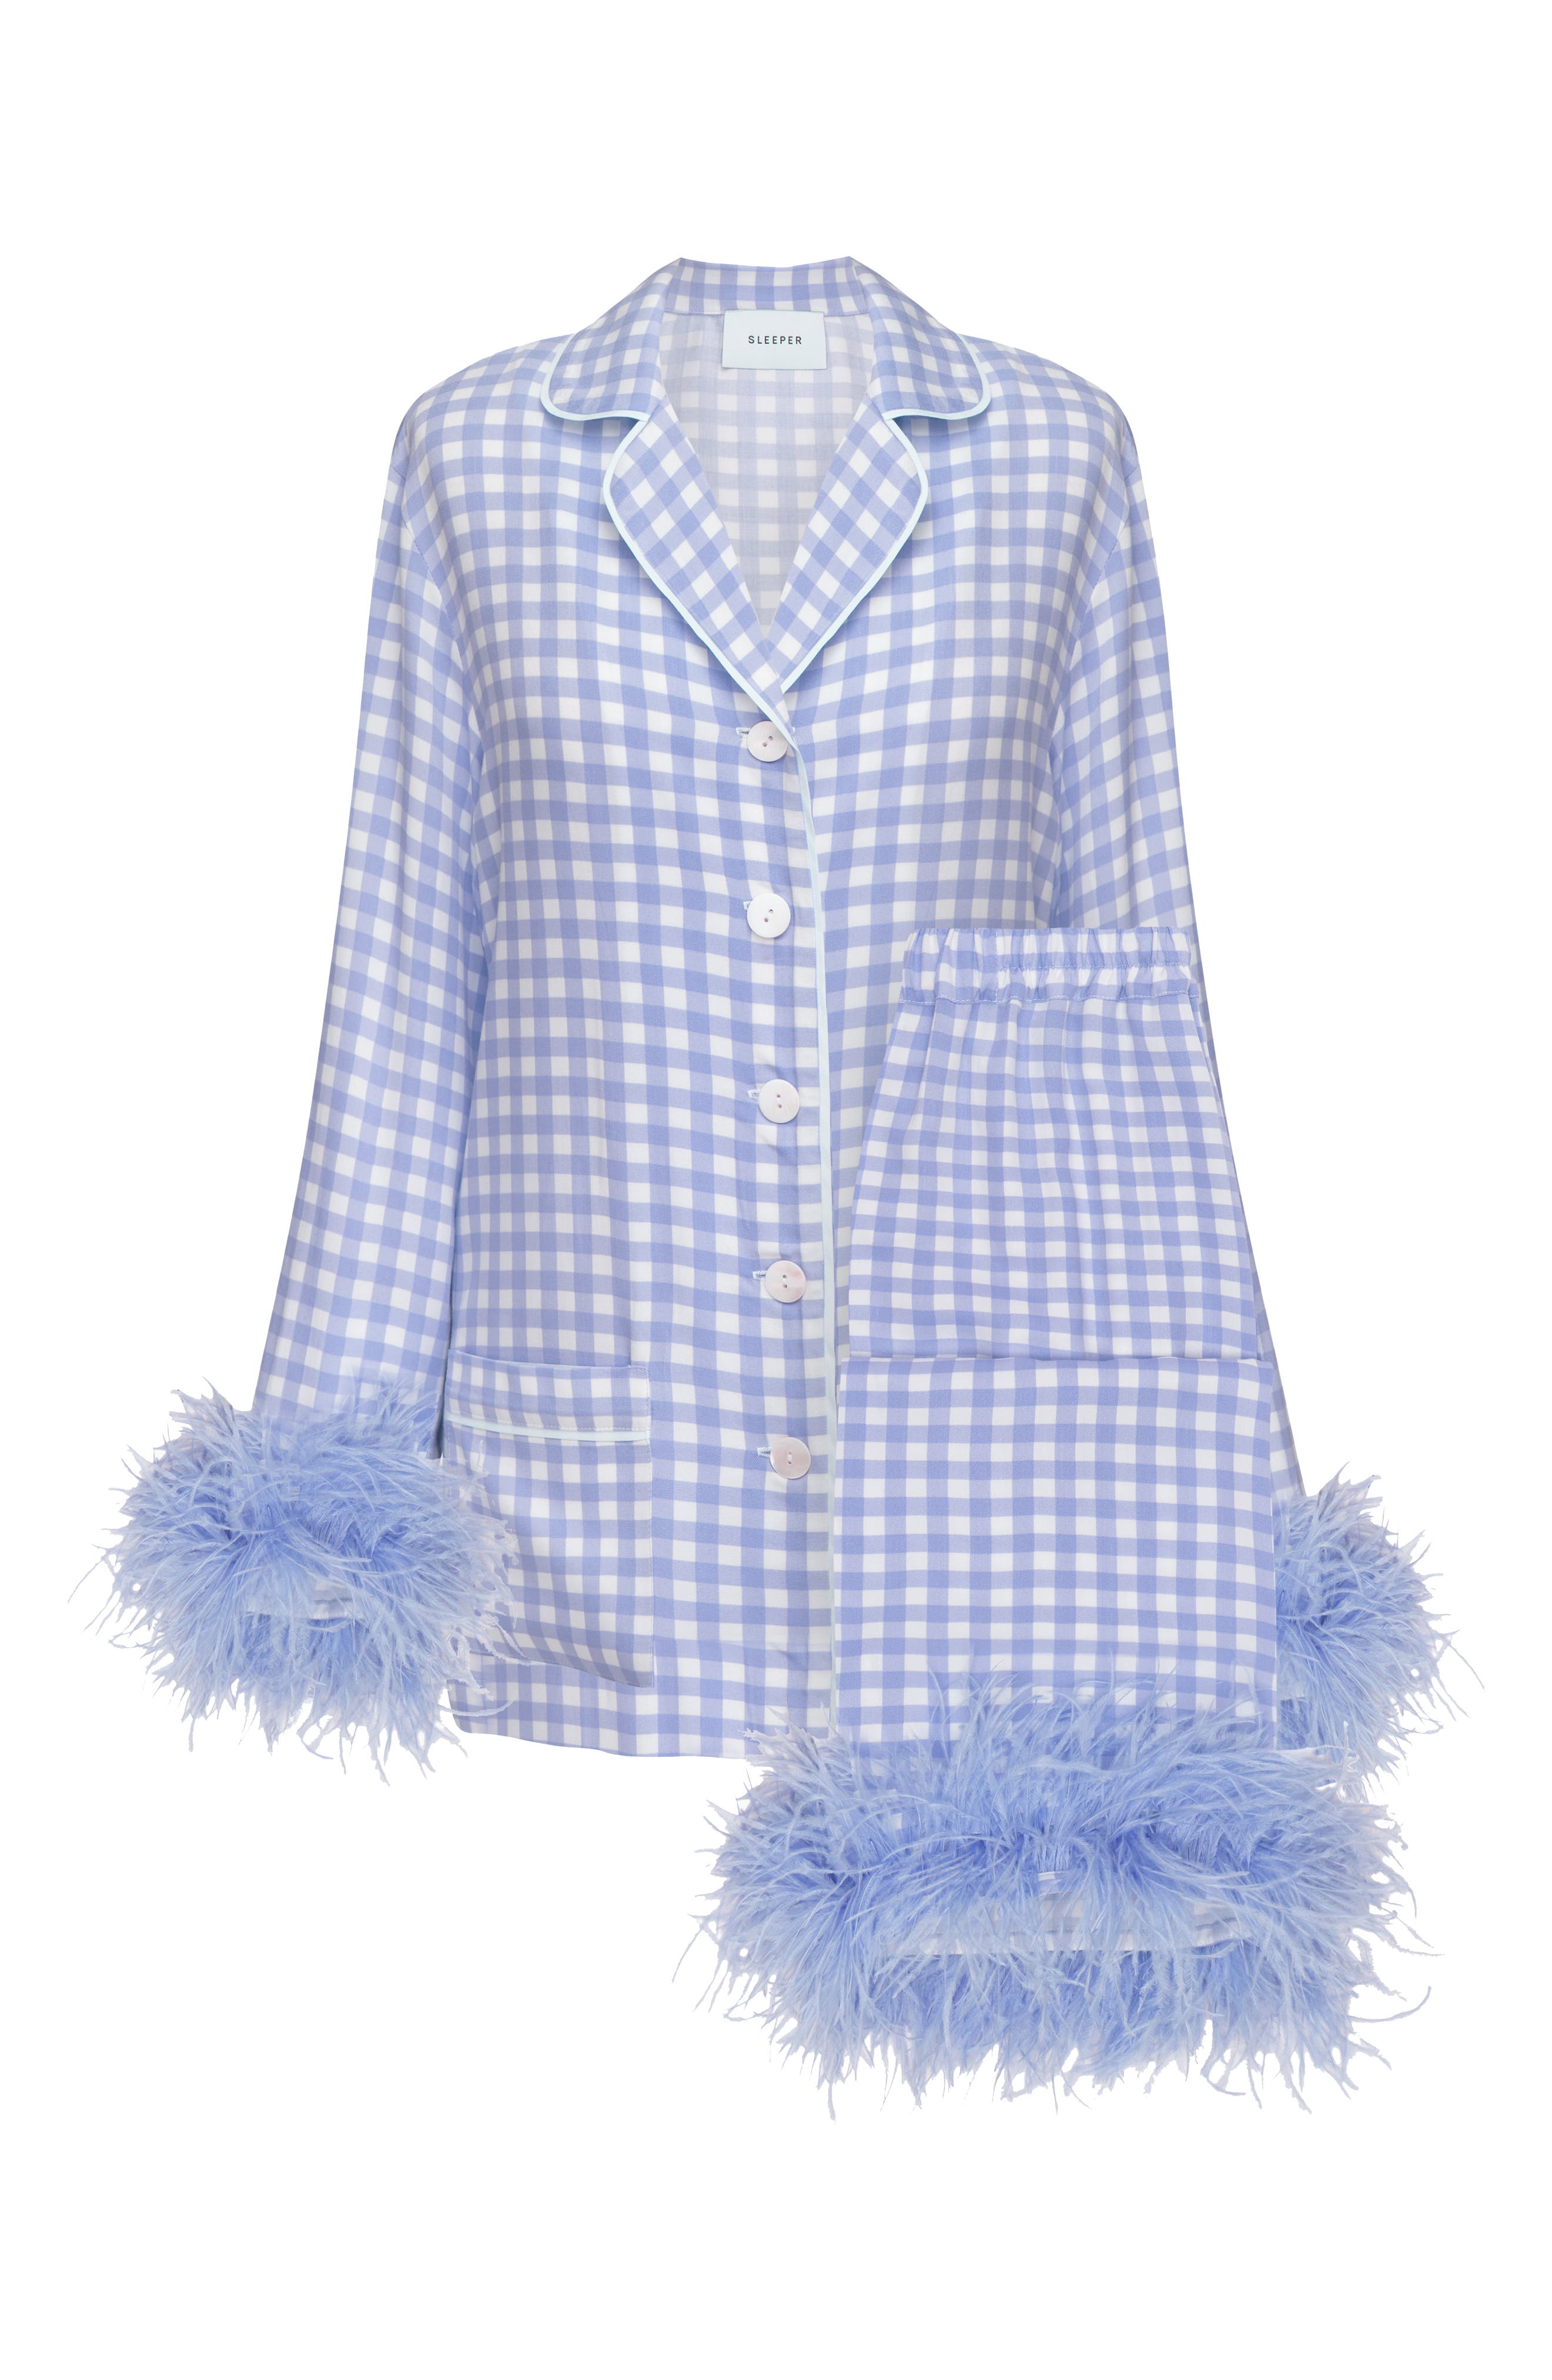 Sleeper Feather Trim Pajama Sets On Sale - Saks Fifth Avenue